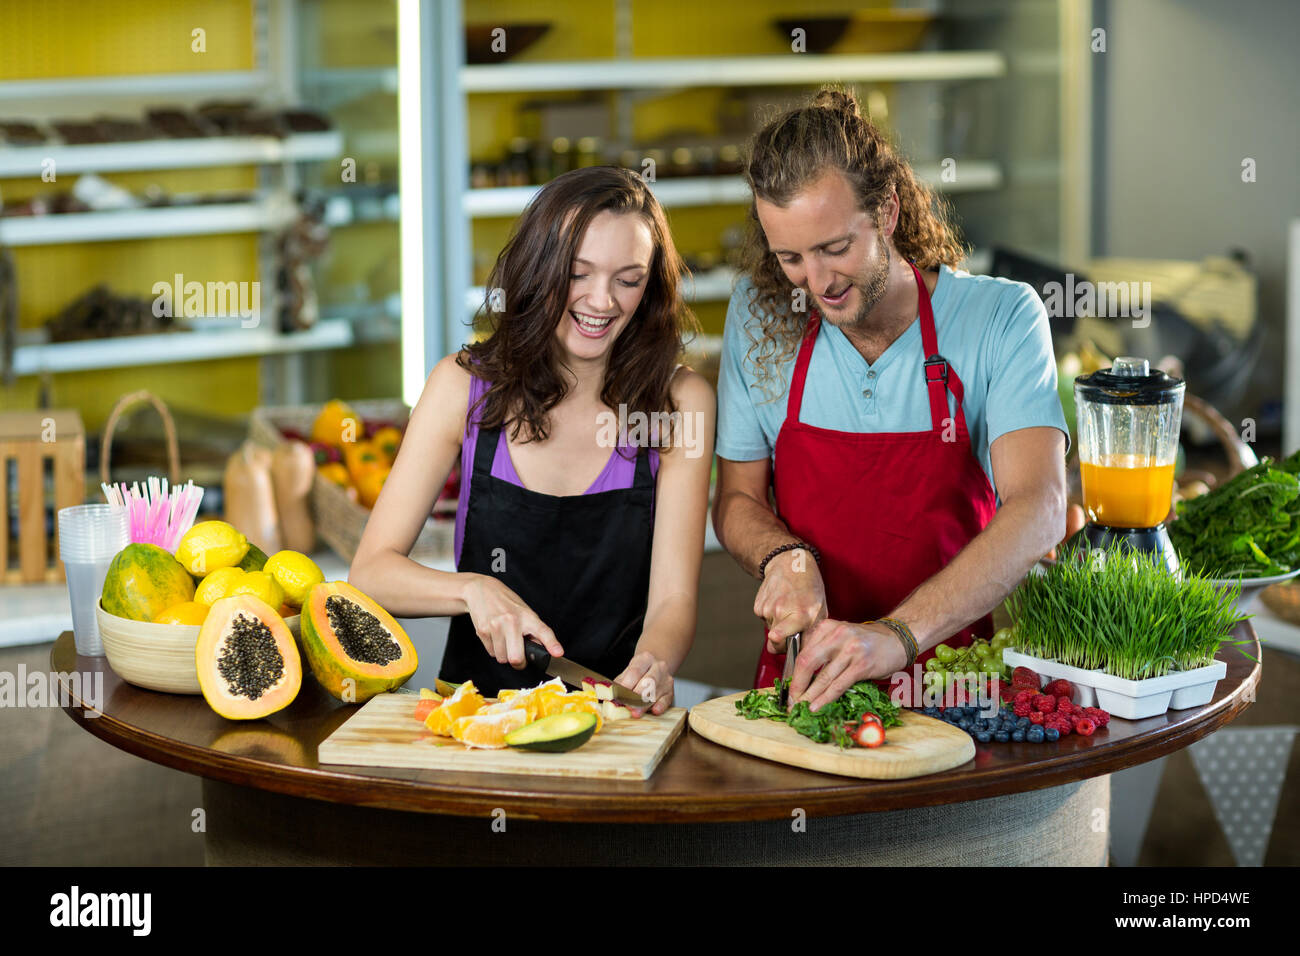 Zwei Verkäuferin Hacken Gemüse und Obst am Schalter im Lebensmittelgeschäft Gesundheit Stockfoto